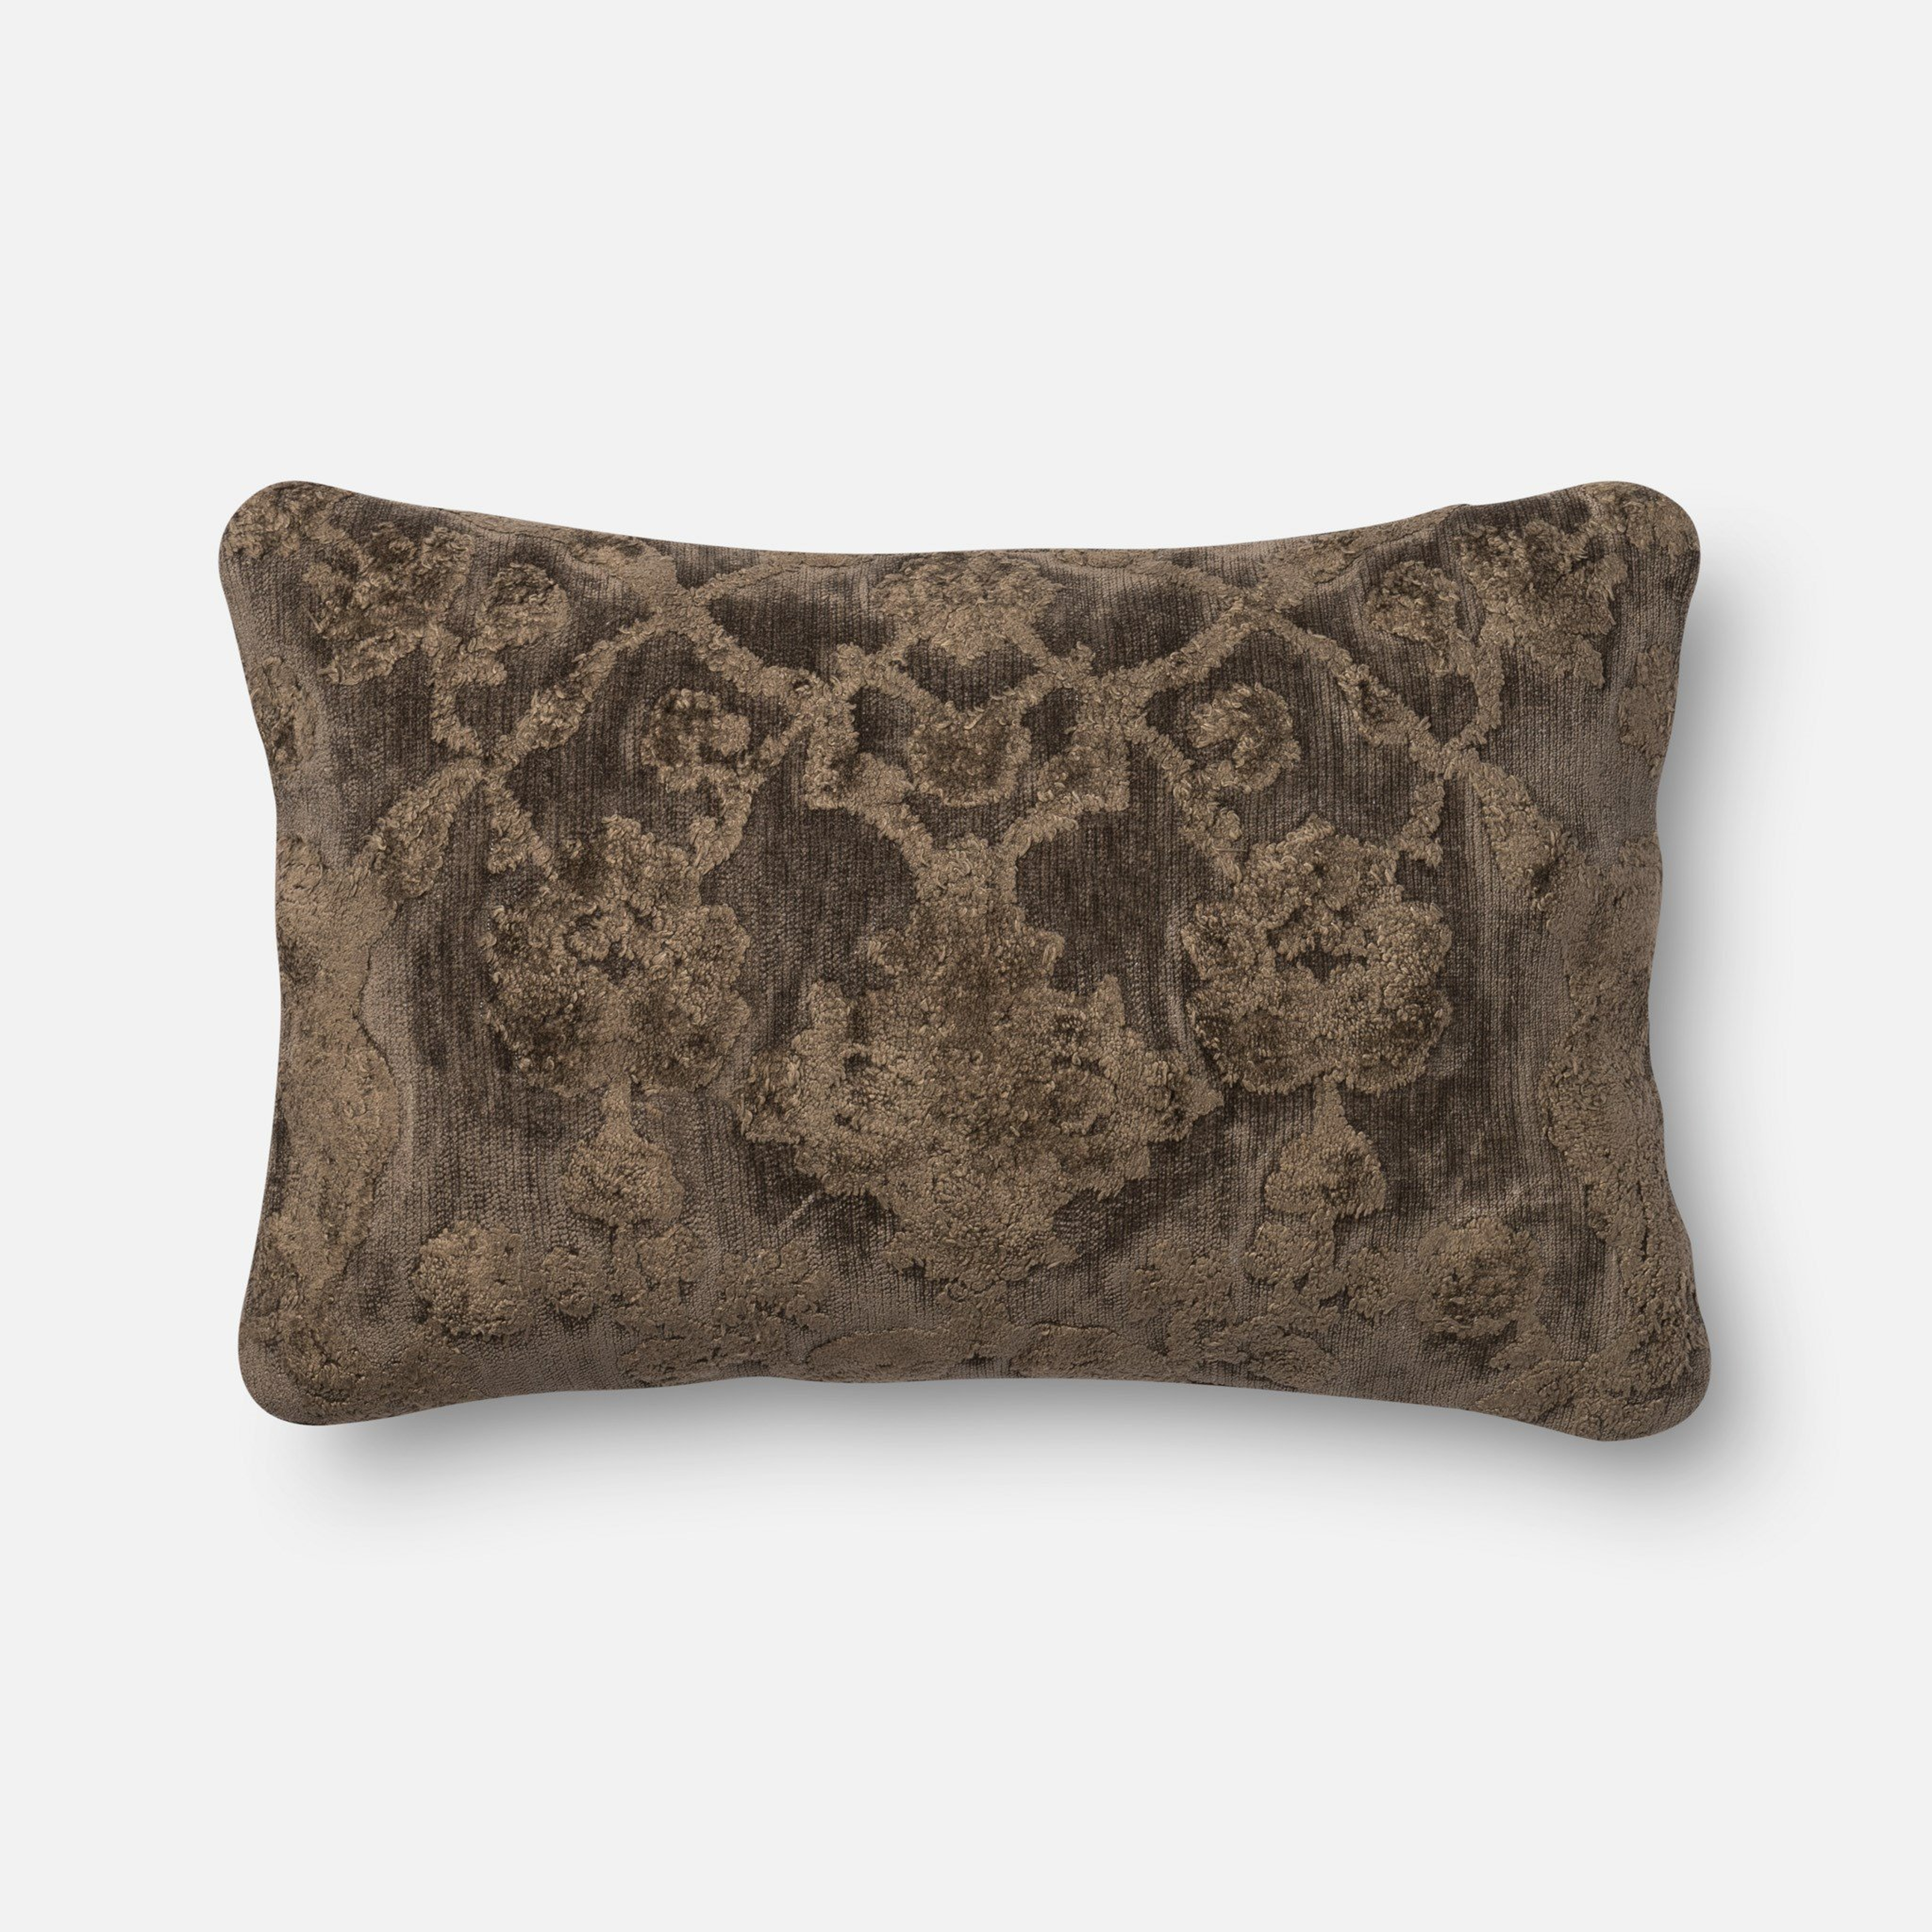 Venetian Lumbar Throw Pillow, Brown, 22" x 14" - Loloi Rugs